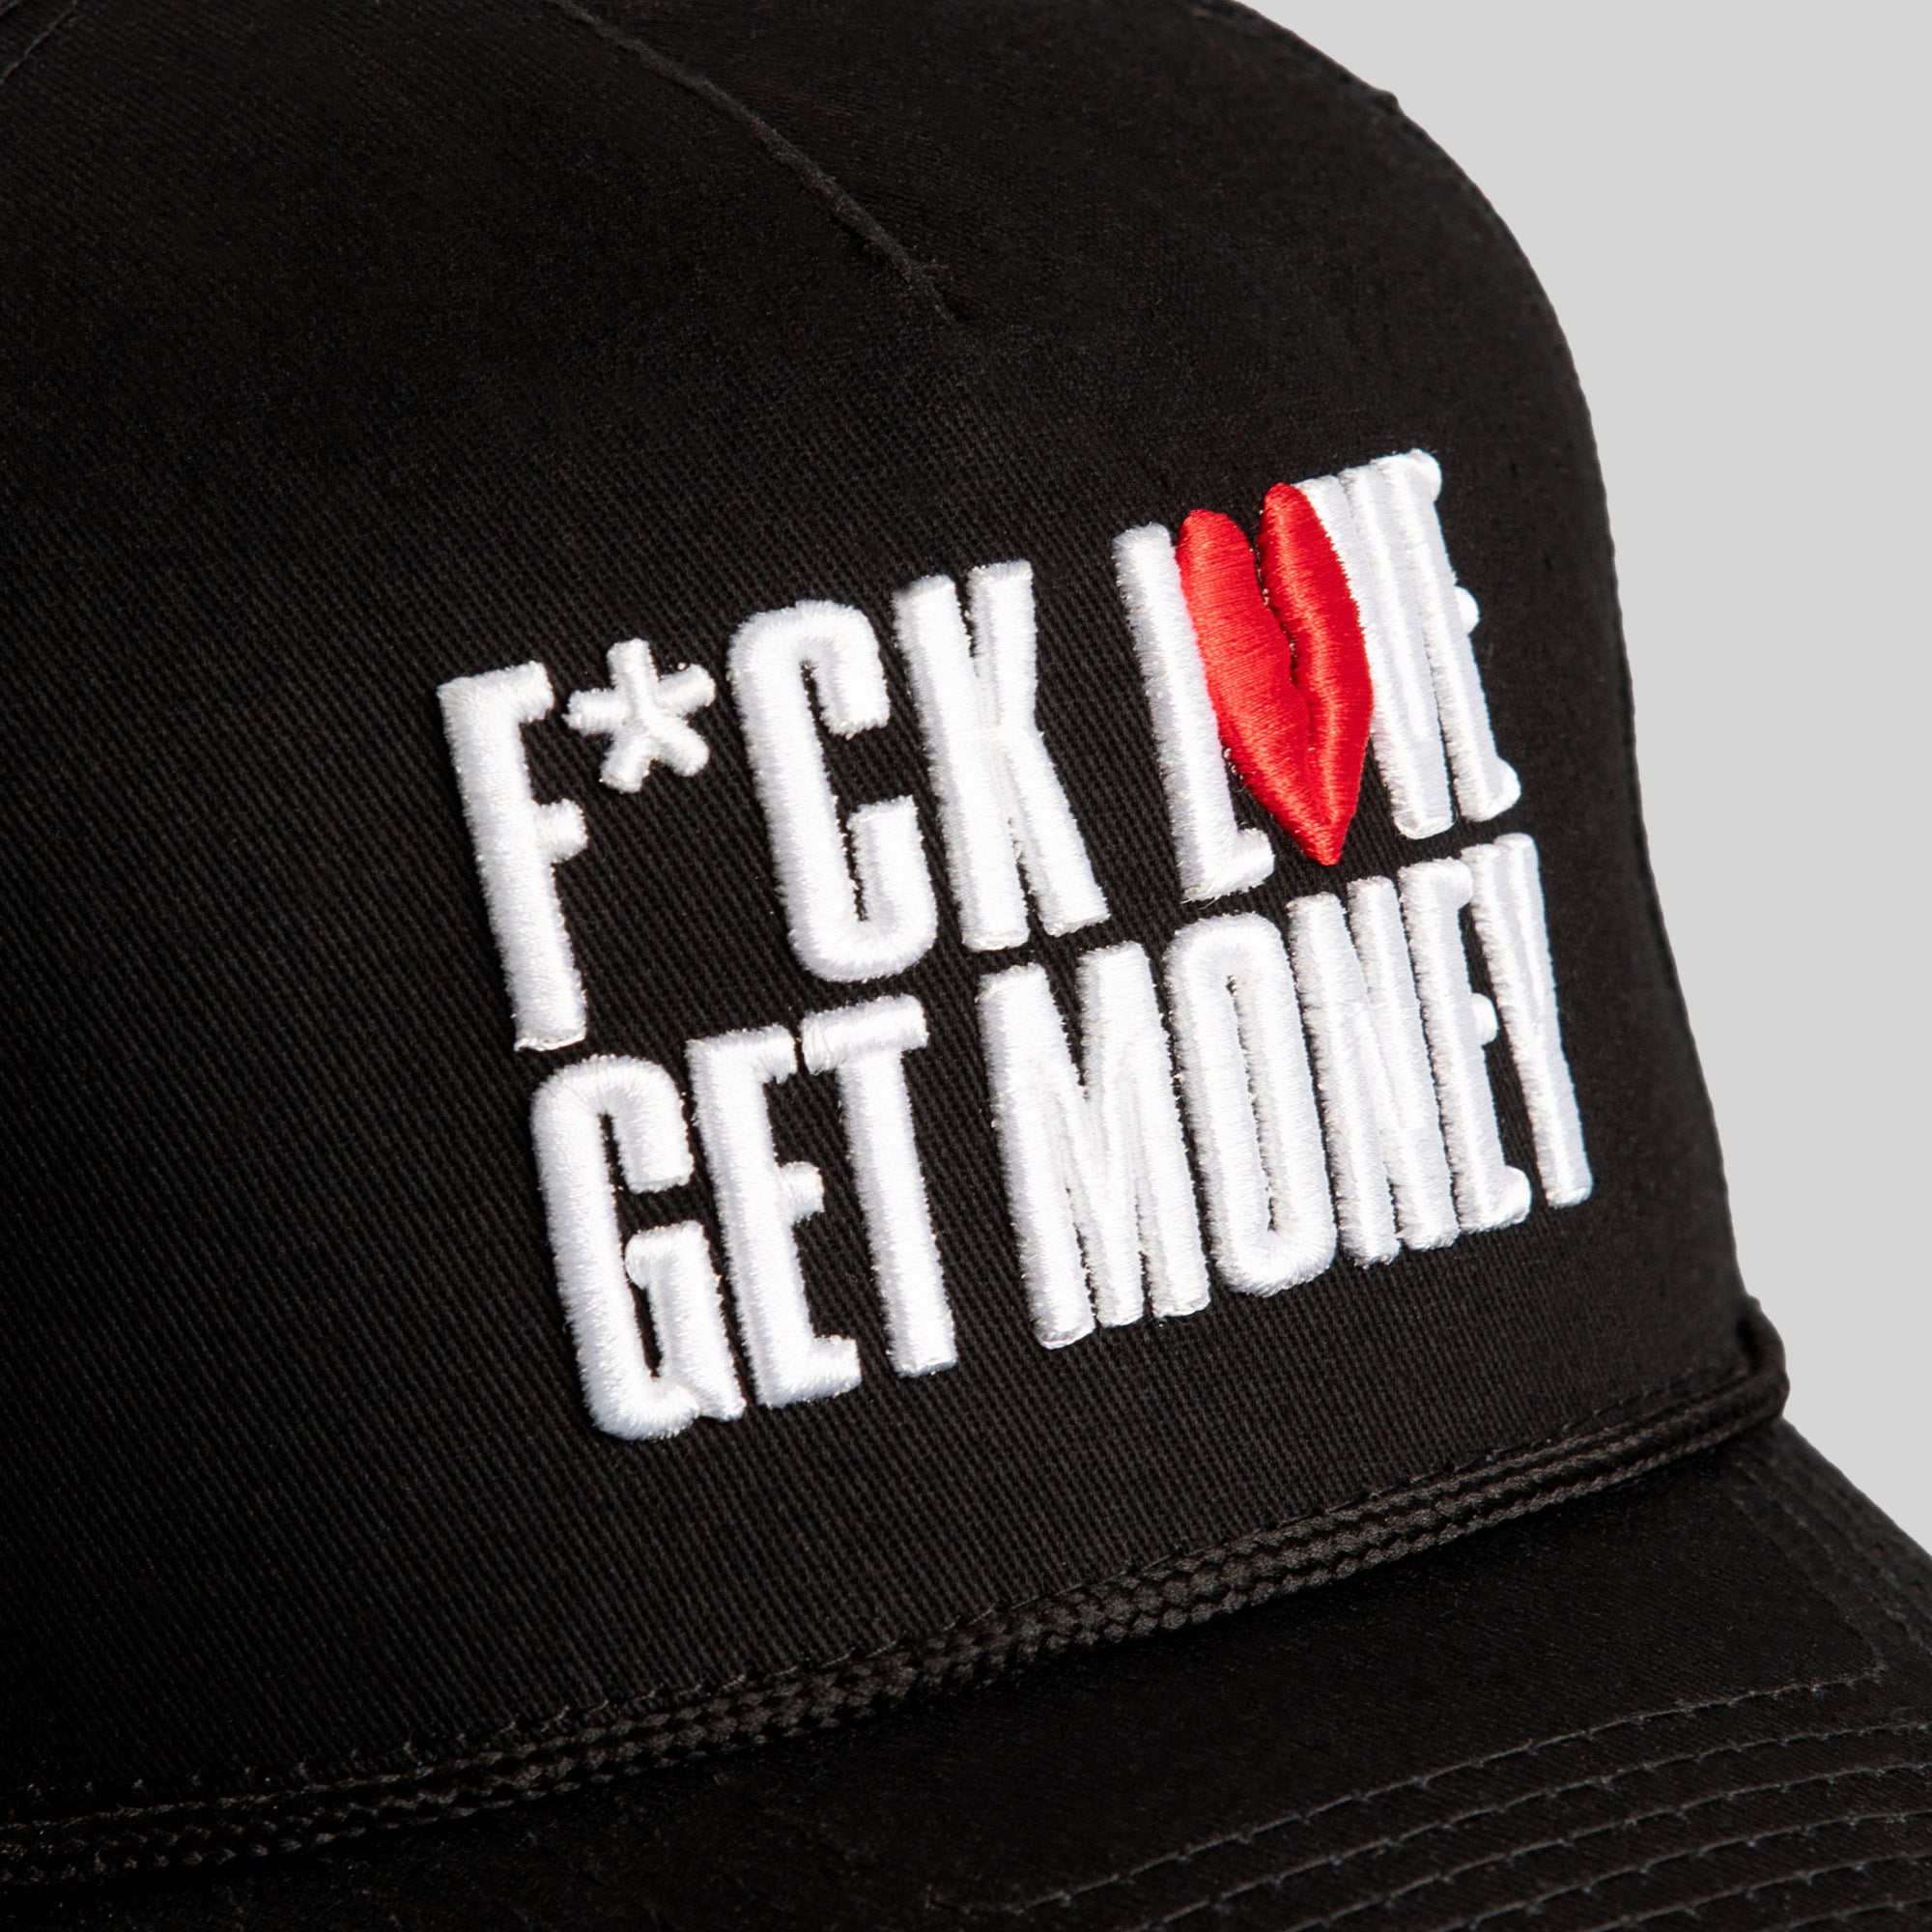 F*CK LOVE, GET MONEY BLACK TRUCKER HAT